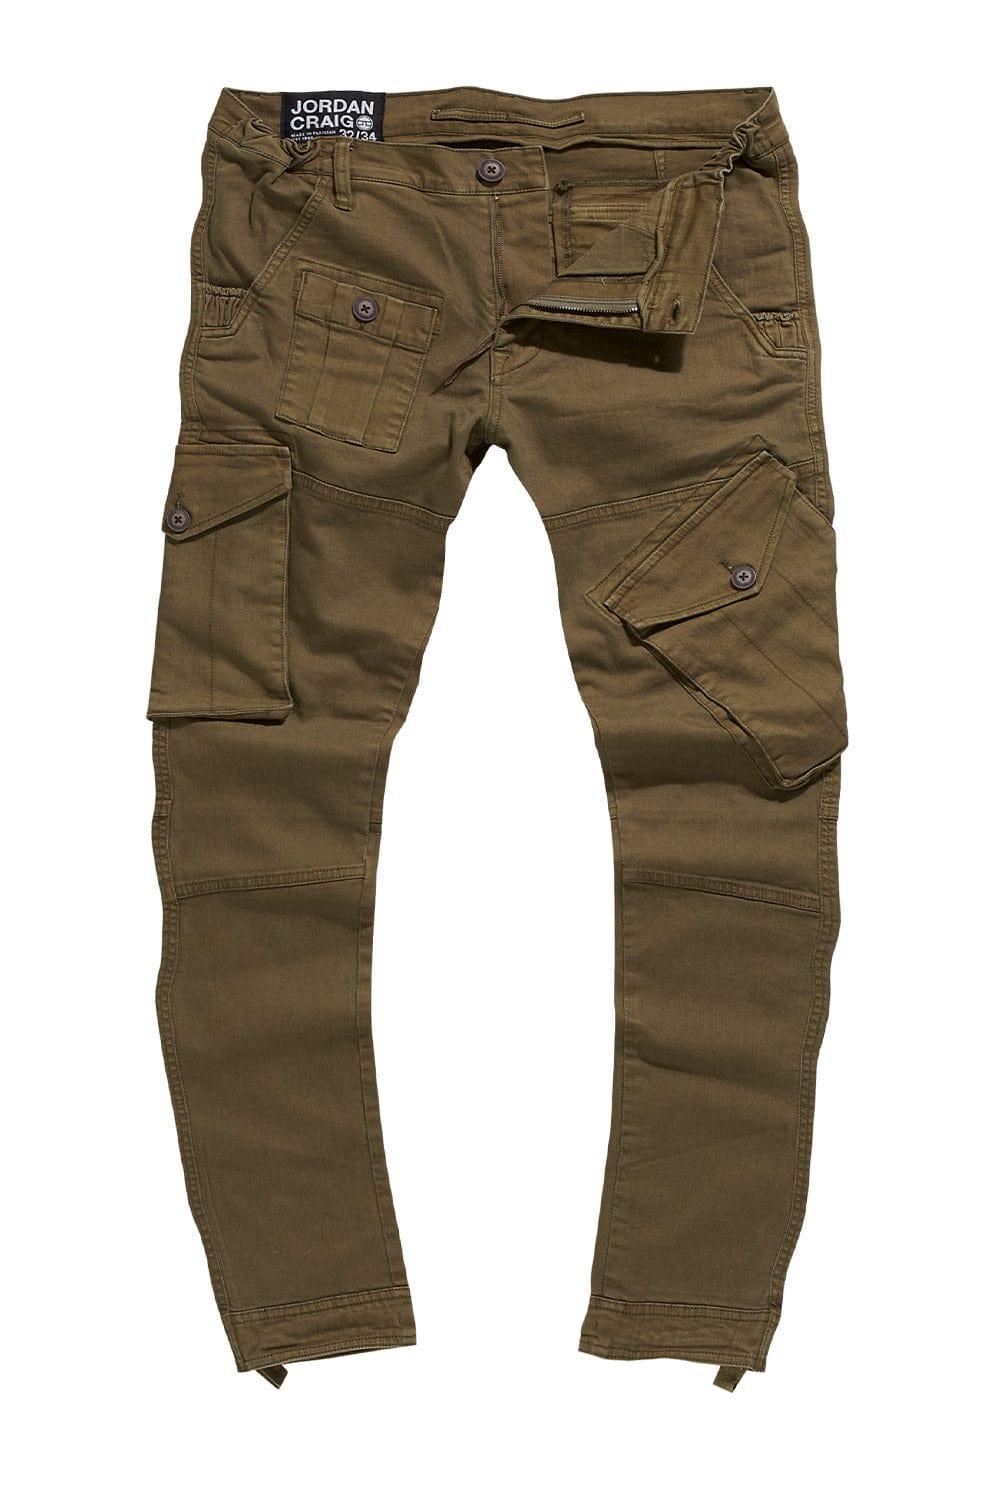 Shop Jordan Craig Twill Cargo Pants 5656CJ-CAM camo